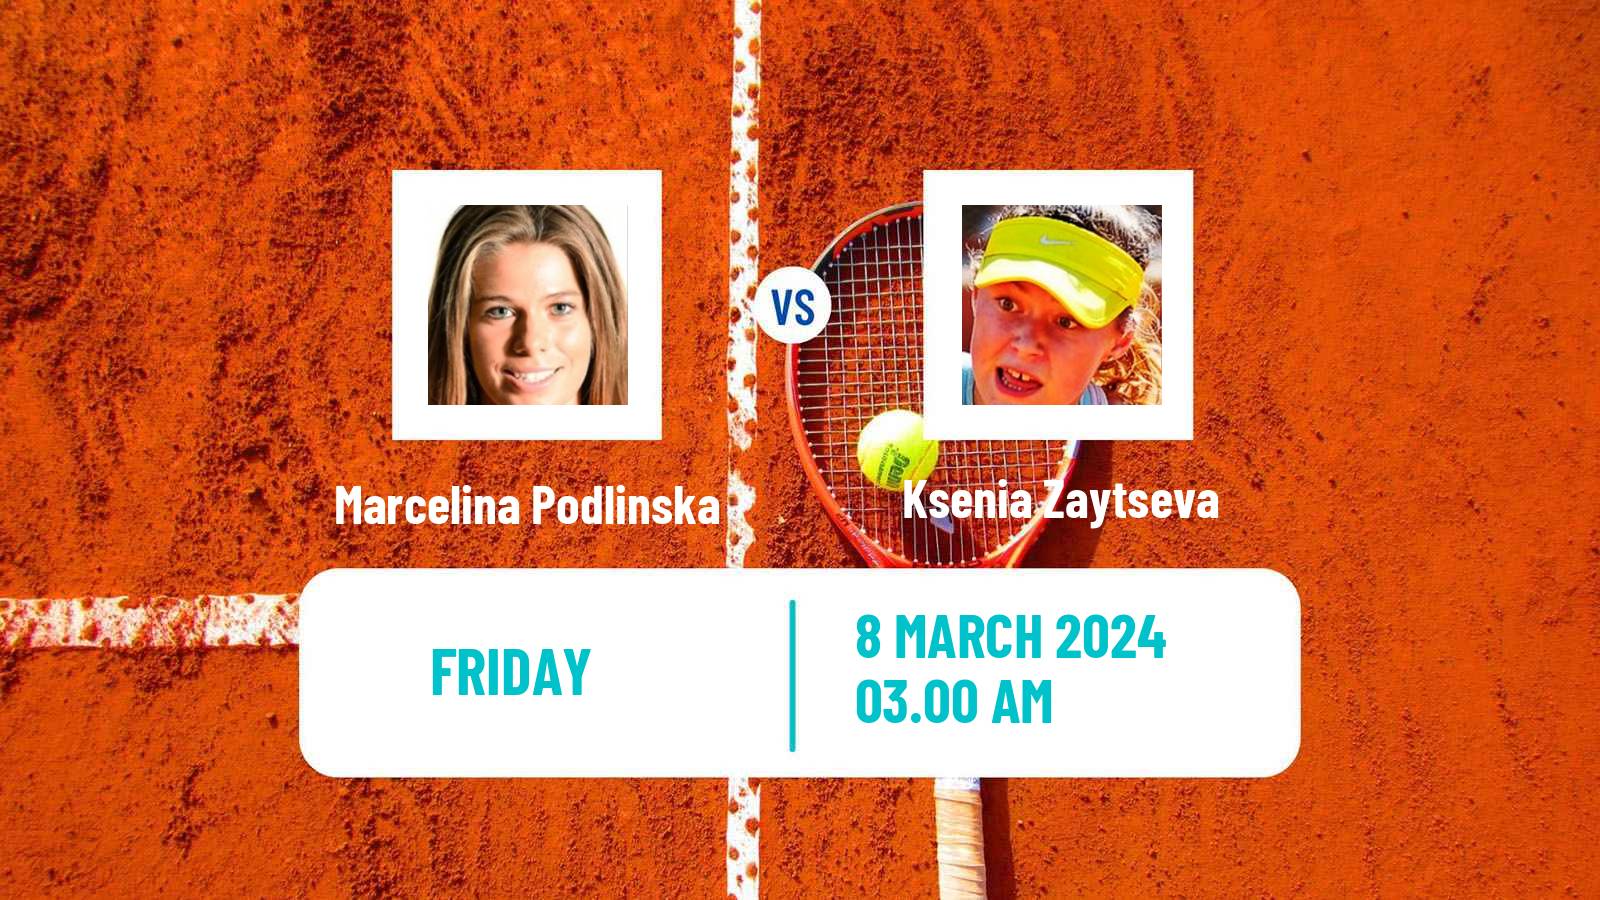 Tennis ITF W15 Heraklion Women Marcelina Podlinska - Ksenia Zaytseva